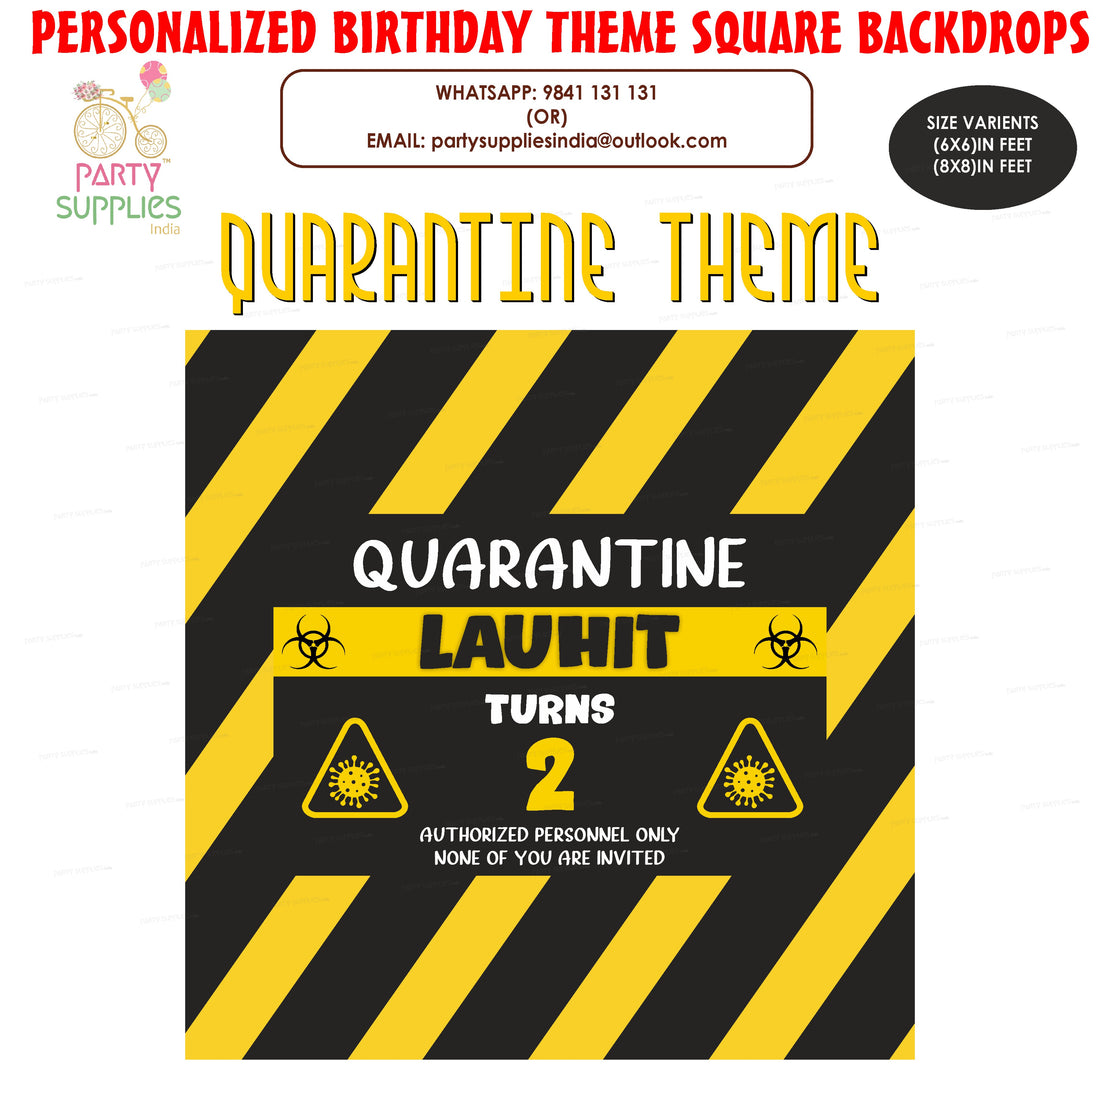 PSI Quarantine Theme Personalized Square Backdrop